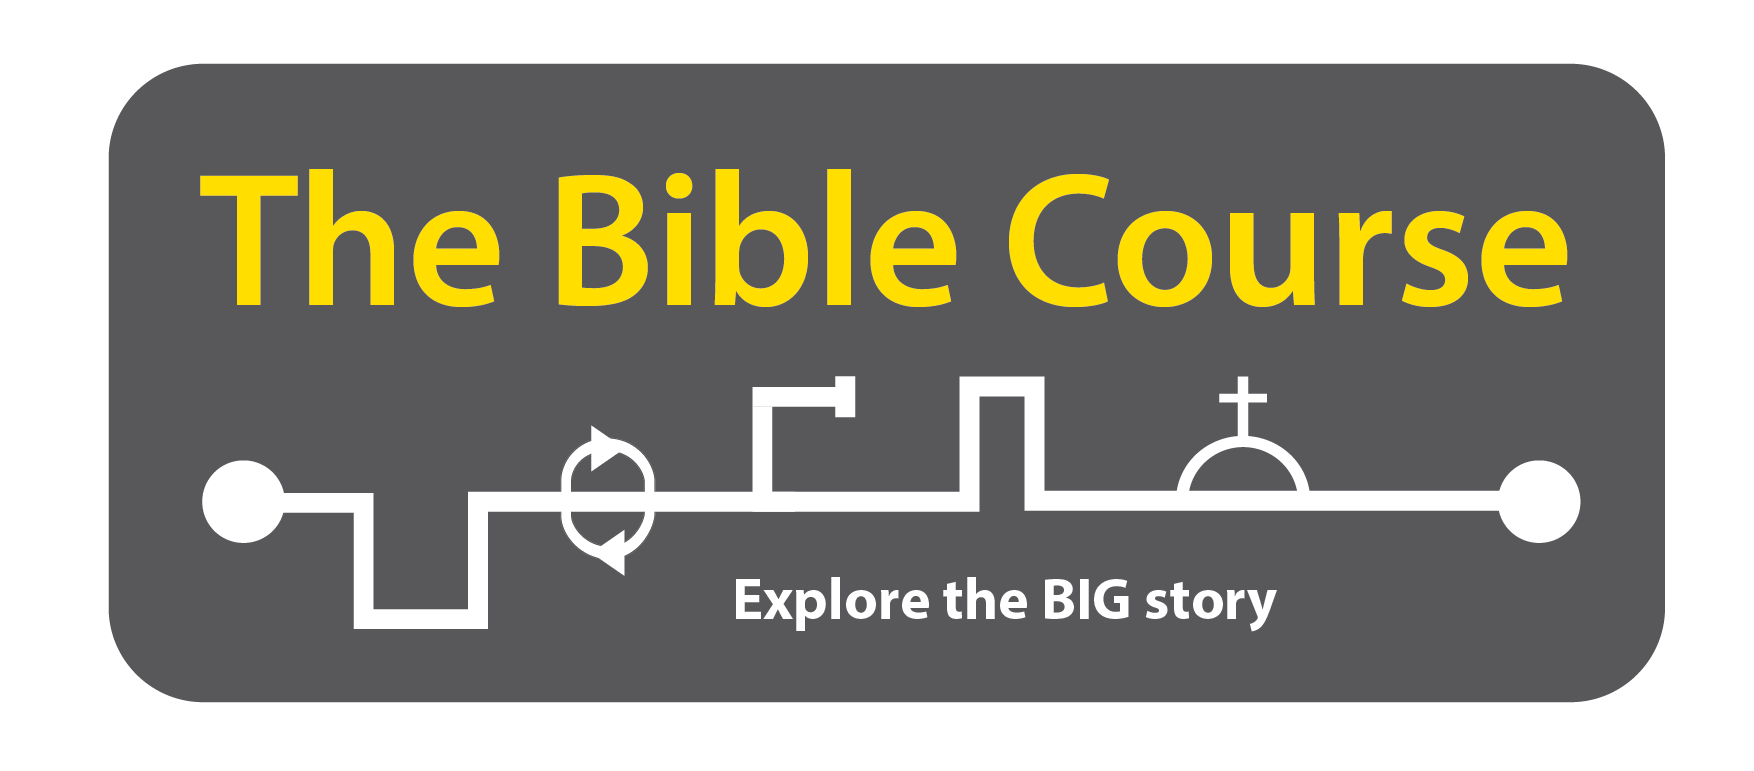 The Bible Course logo